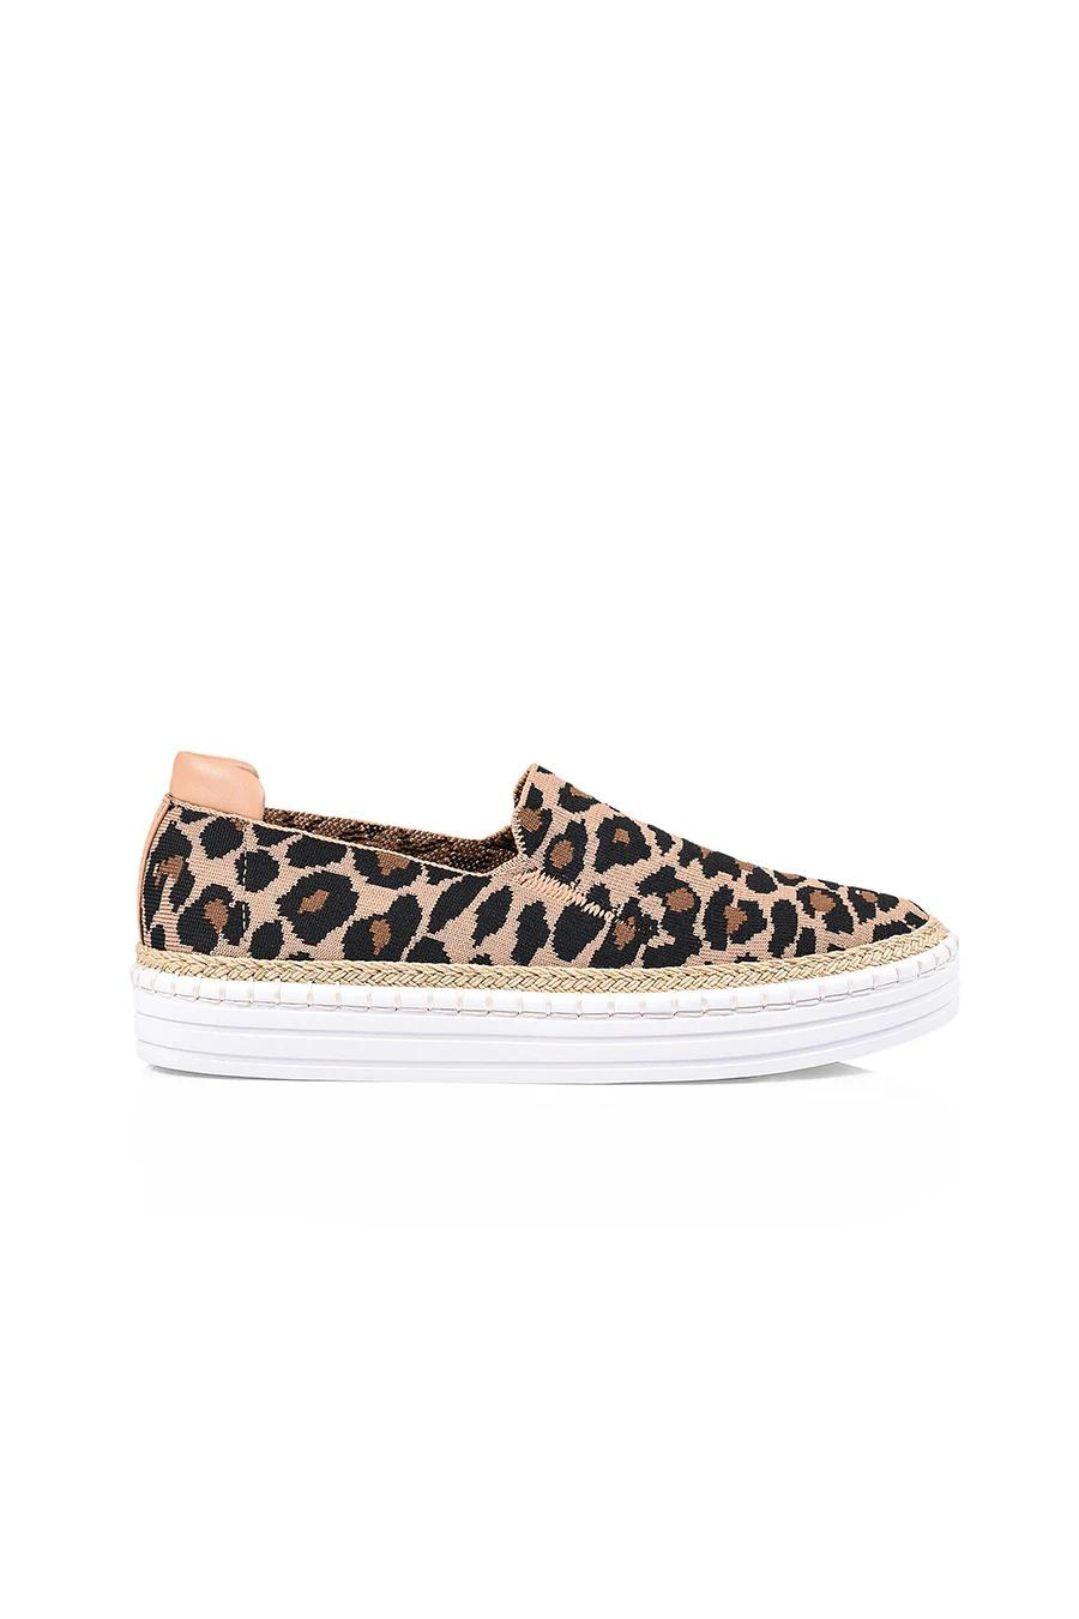 Queen Slip on Sneakers - Leopard